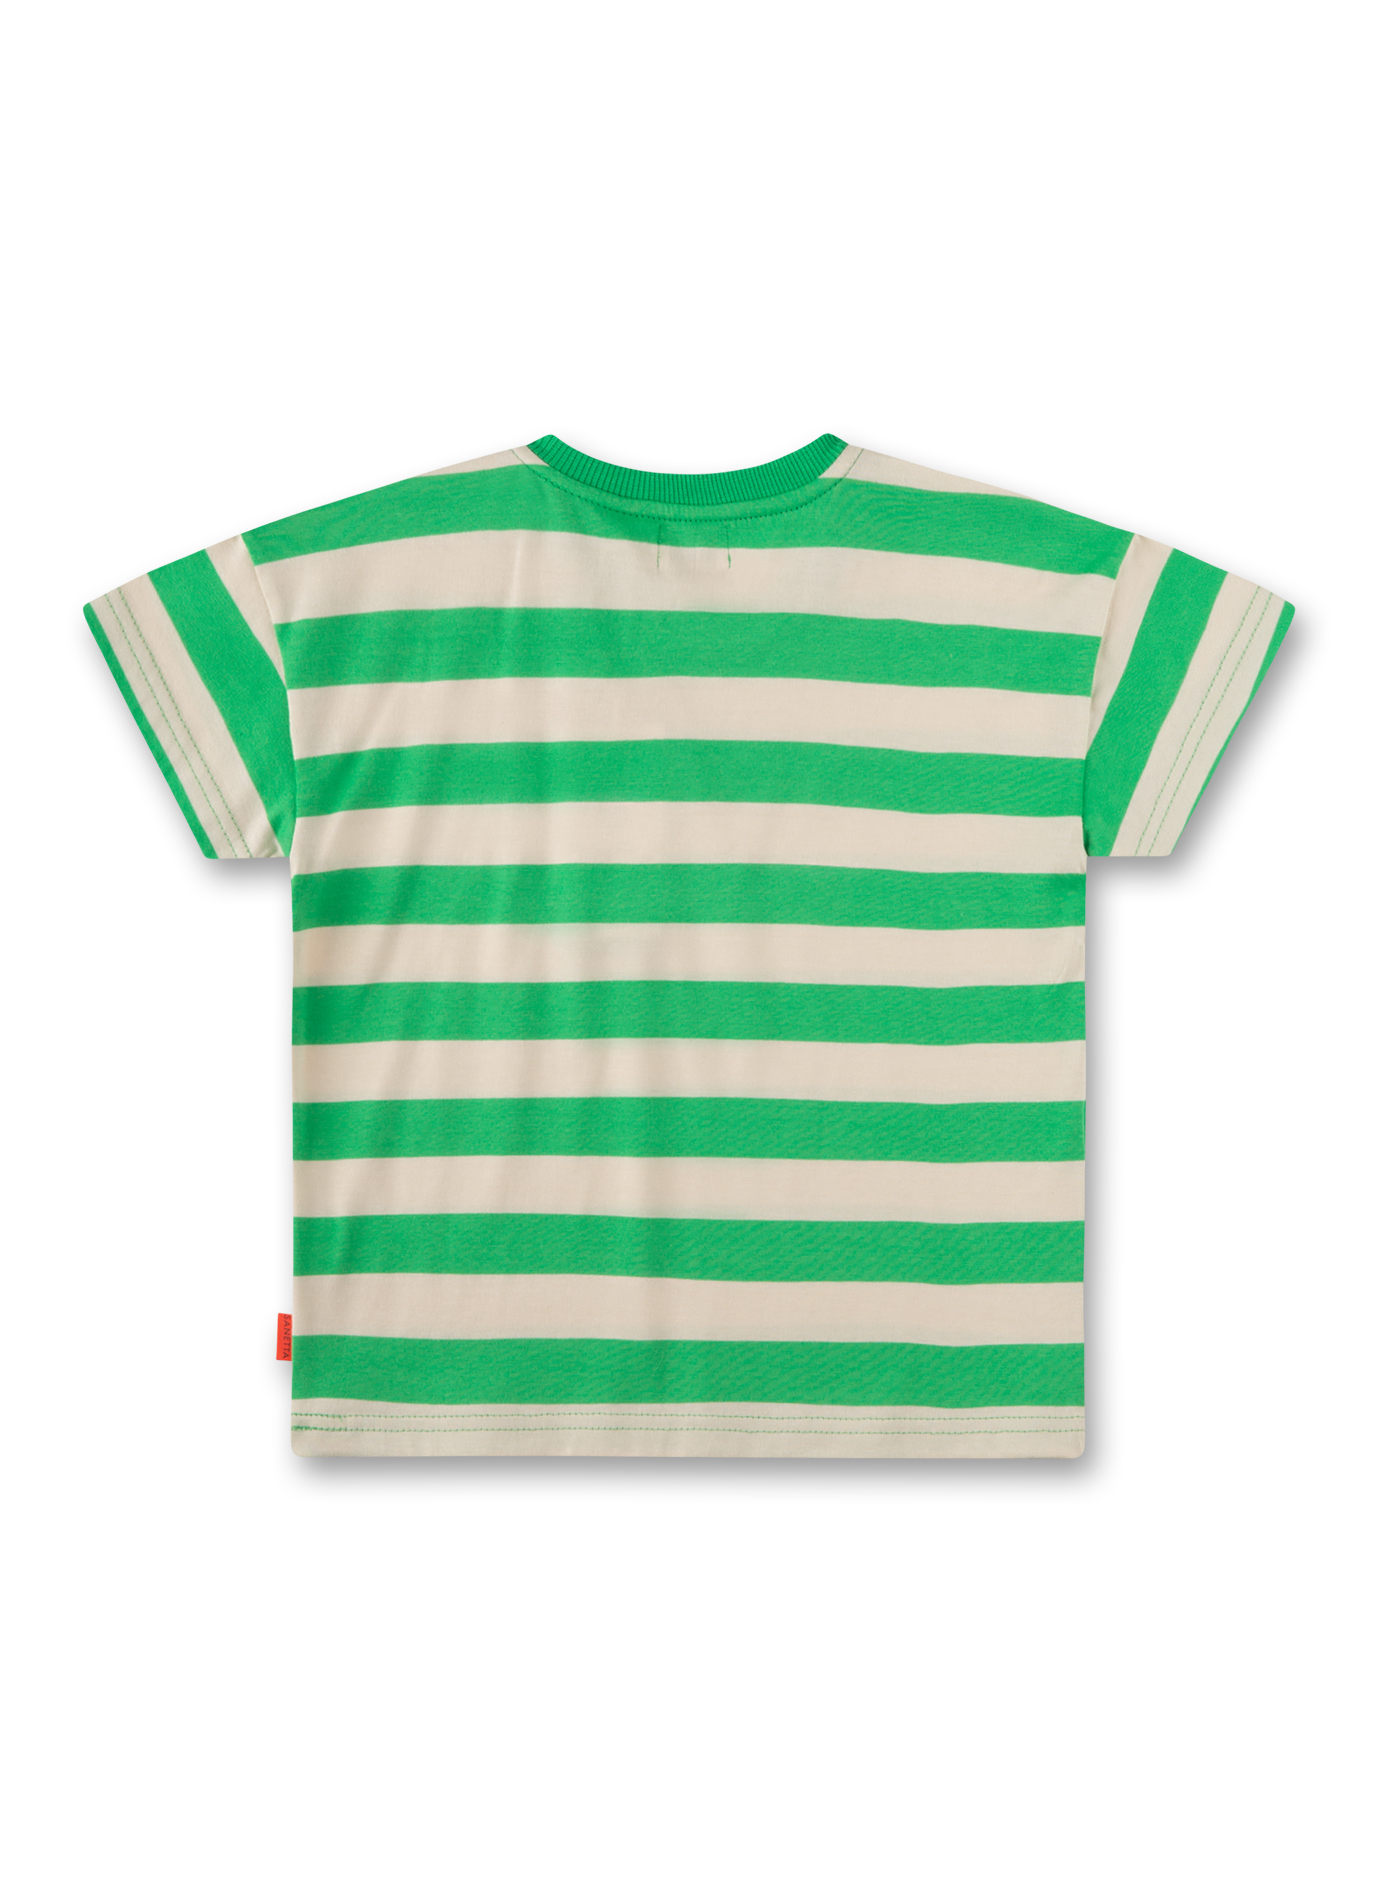 Jungen T-Shirt Grün gestreift